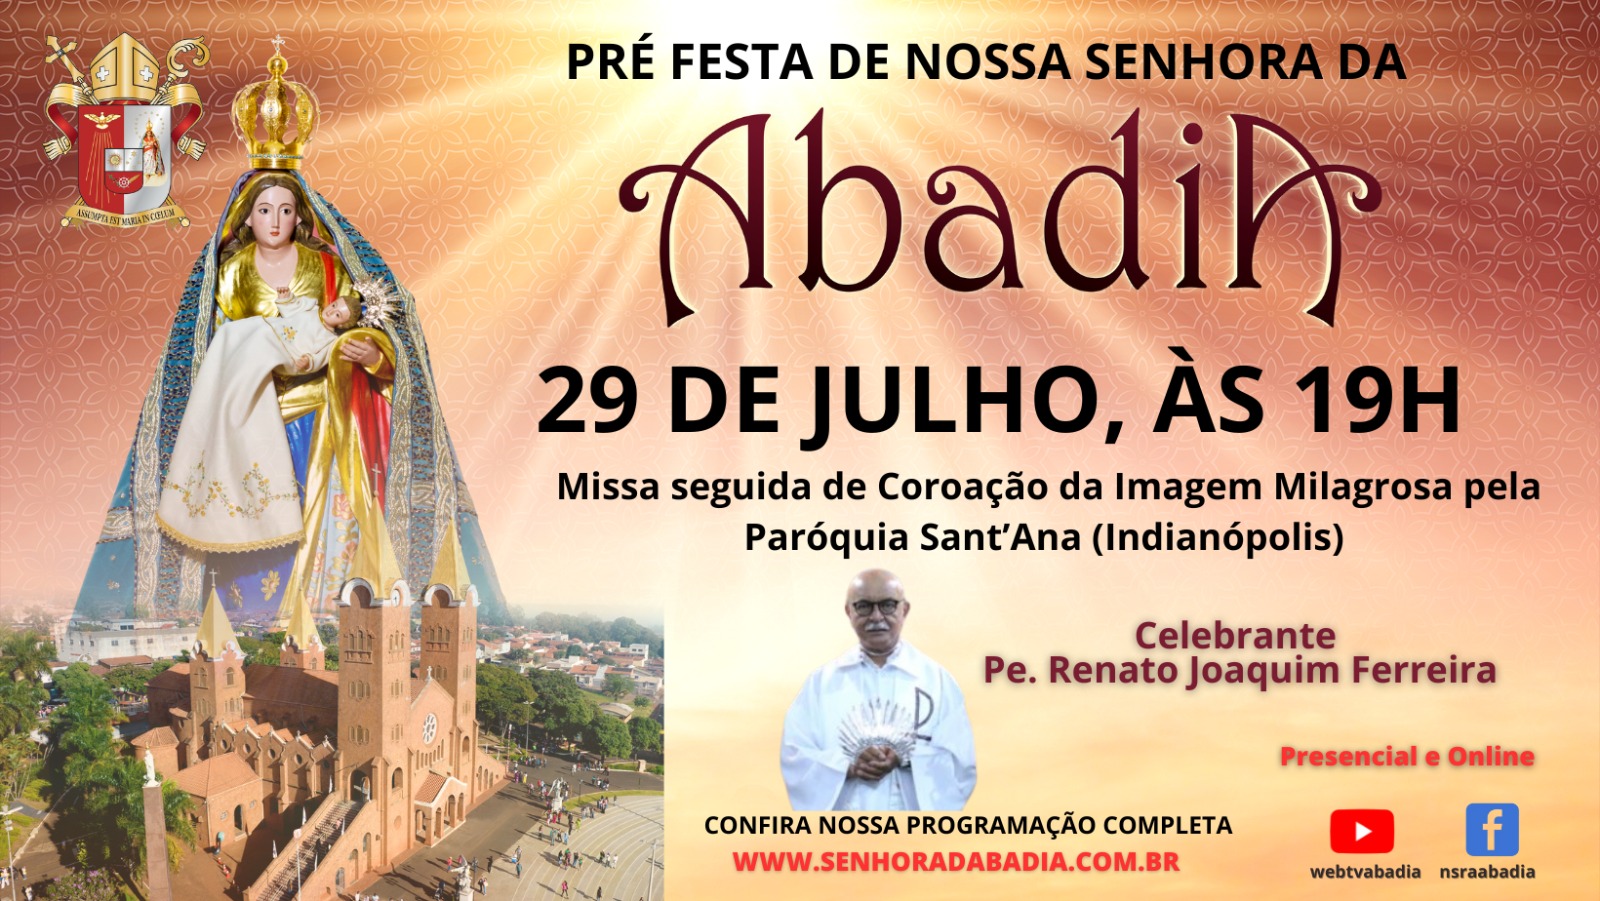 Pre Festa de Nossa Senhora da Abadia - Missa com Pe. Renato - 29/07